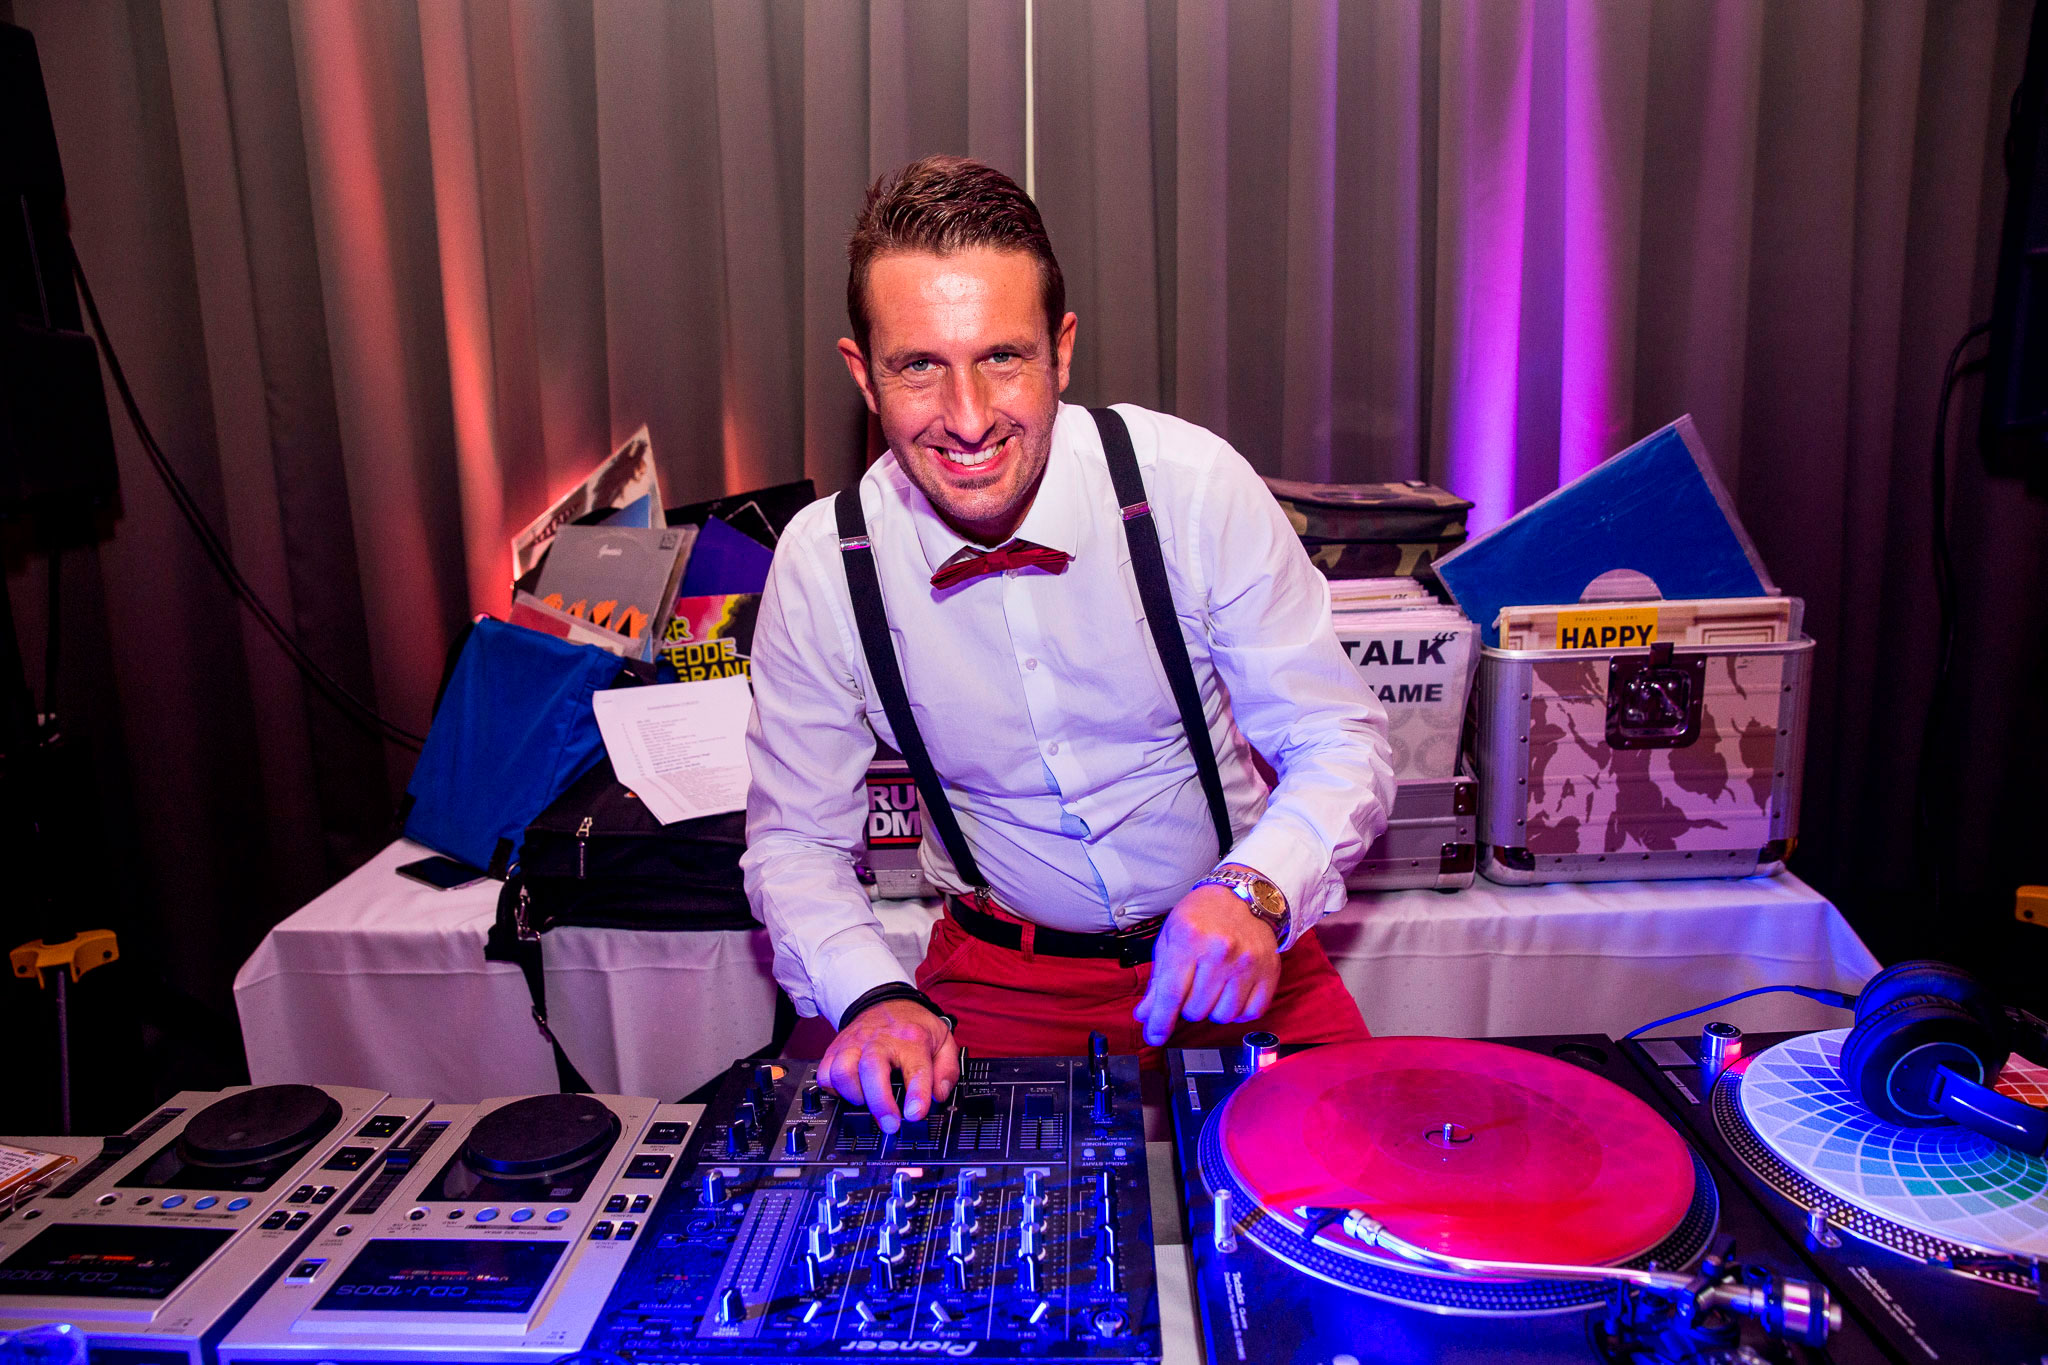 Den Empfang rocken: Tipps für Ihren Hochzeits-DJ